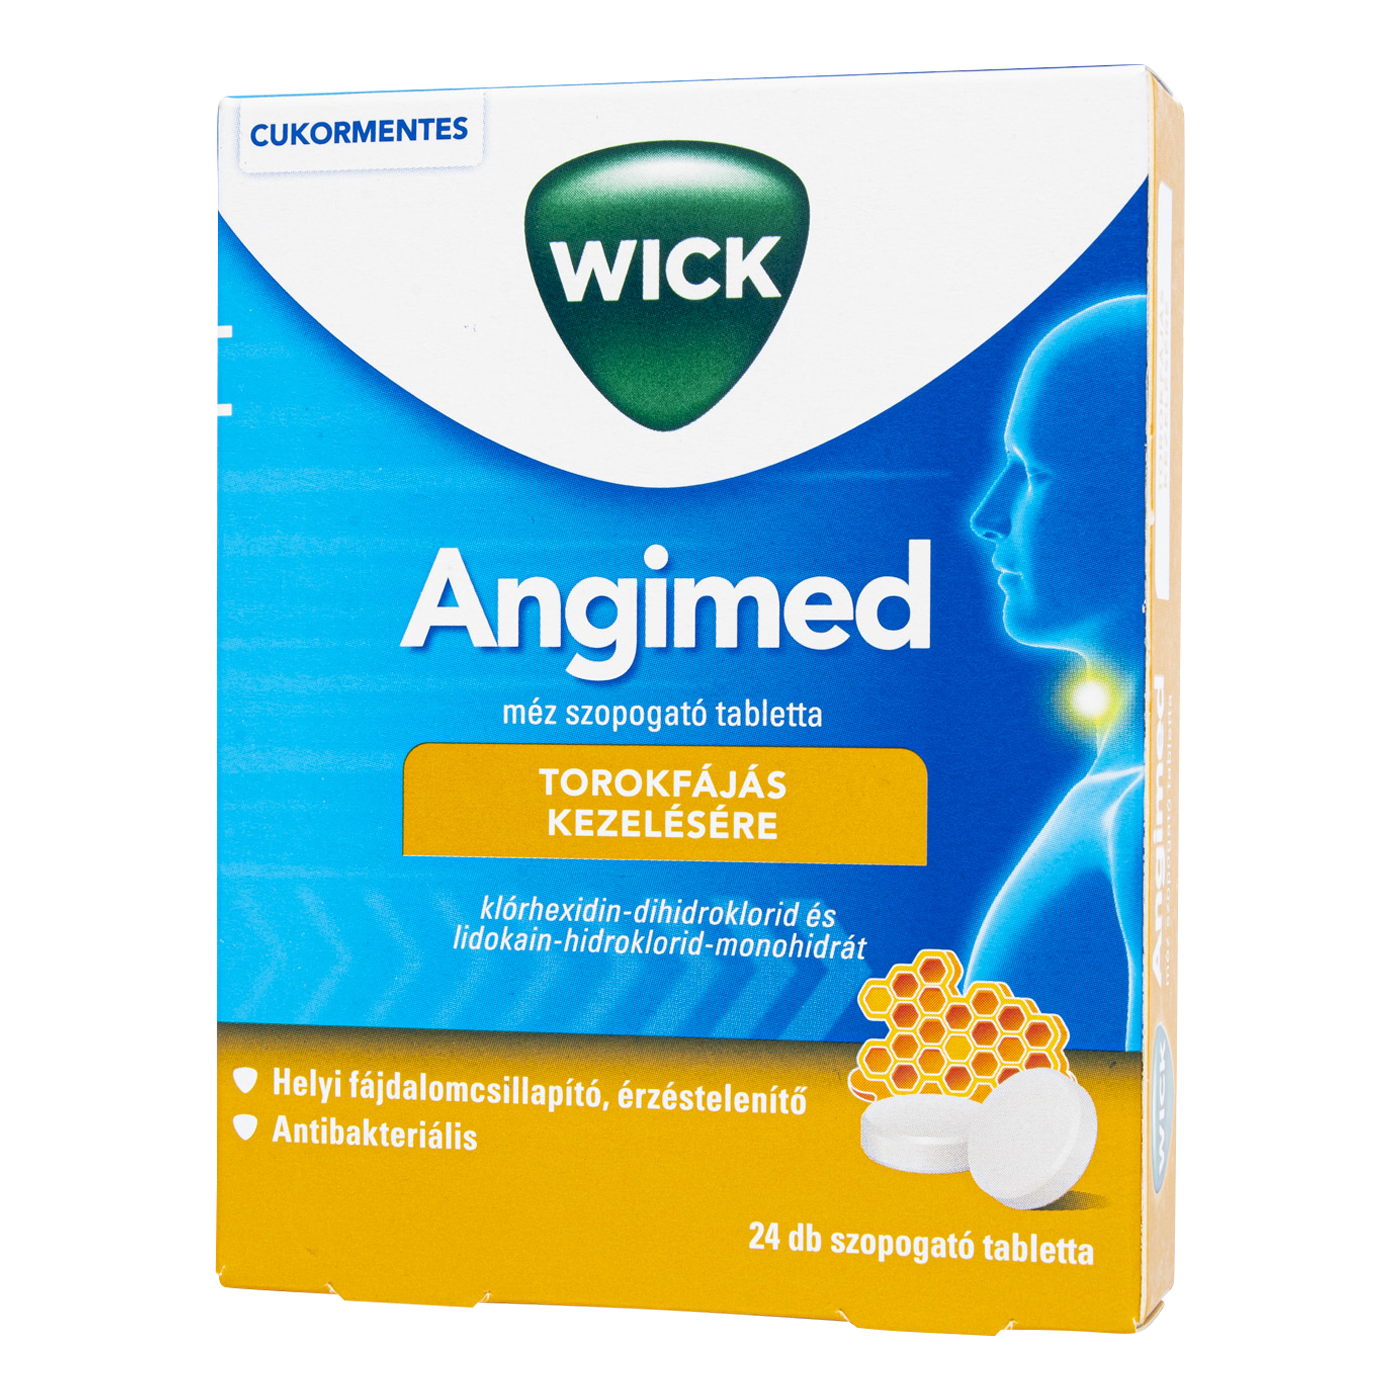 Angimed méz szopogató tabletta 24 db